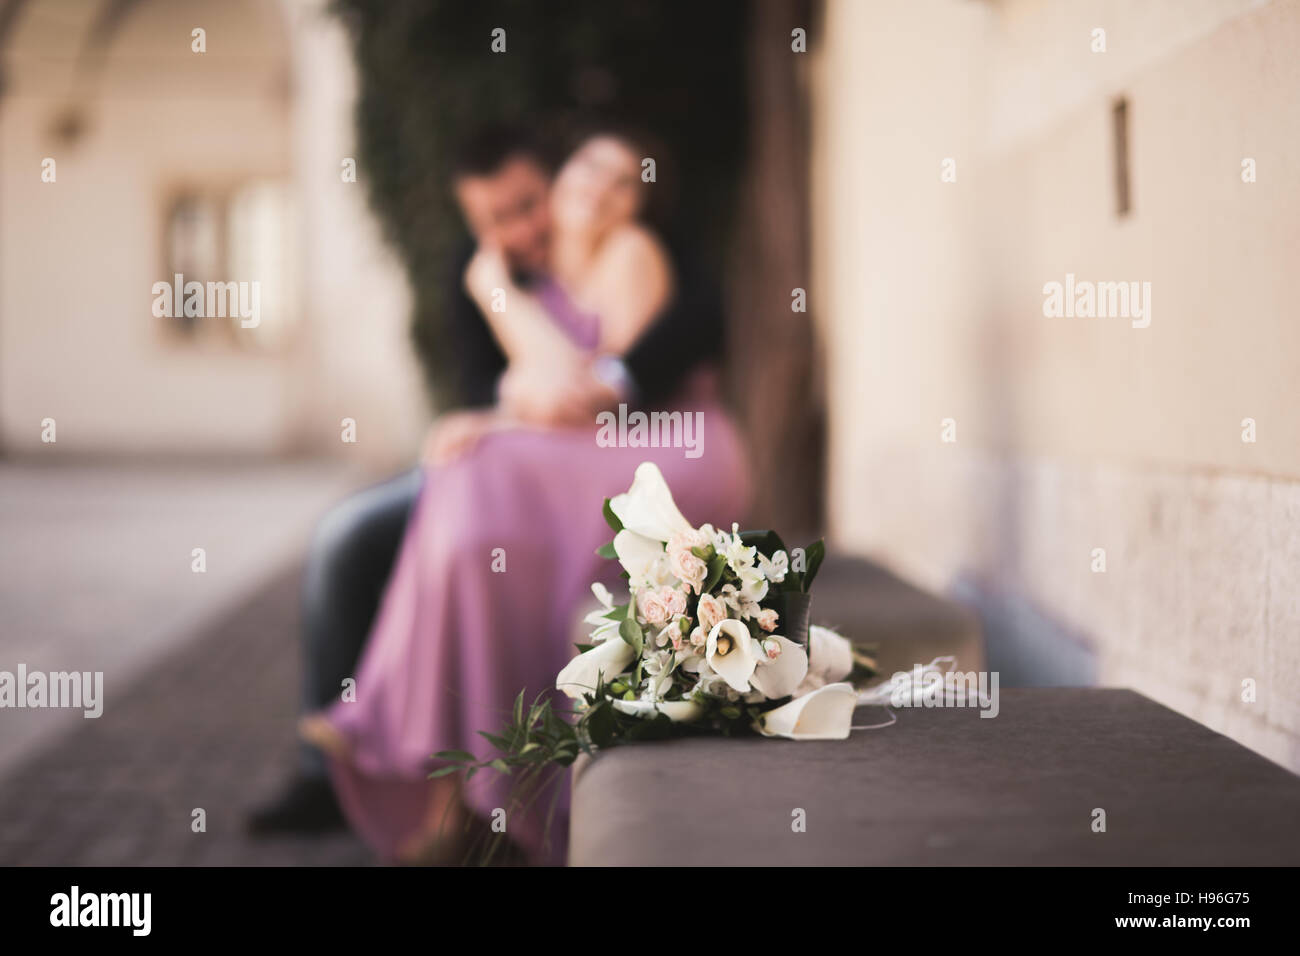 Hochzeit Blumen Bouquet mit Brautpaar auf Hintergrund Stockfotografie -  Alamy